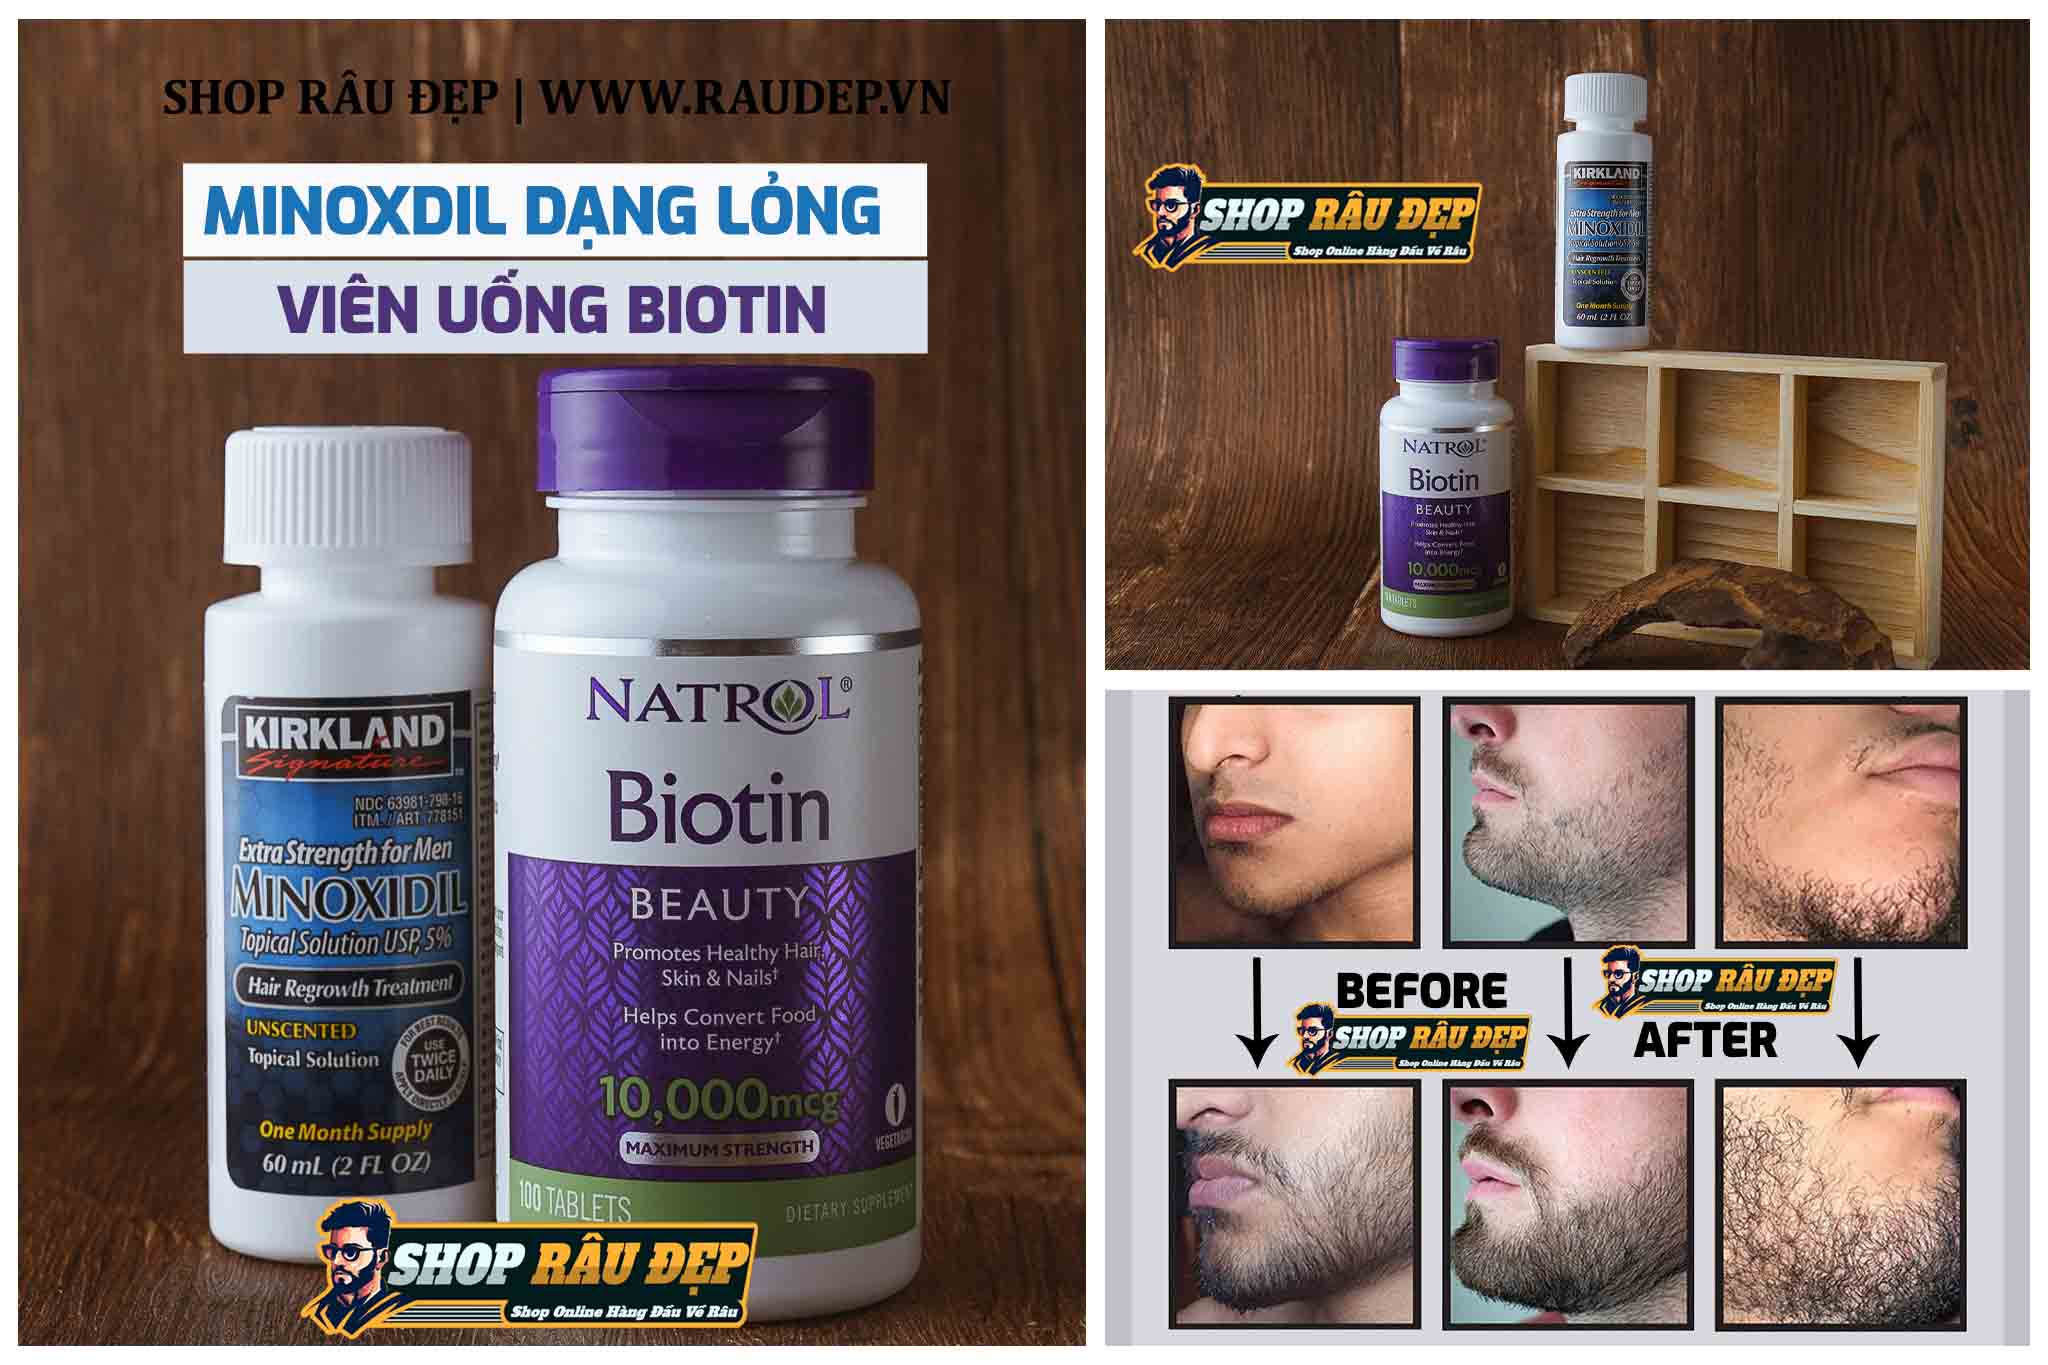 Minoxidil dạng lỏng kết hợp Biotin bức phá giai đoạn mọc râu